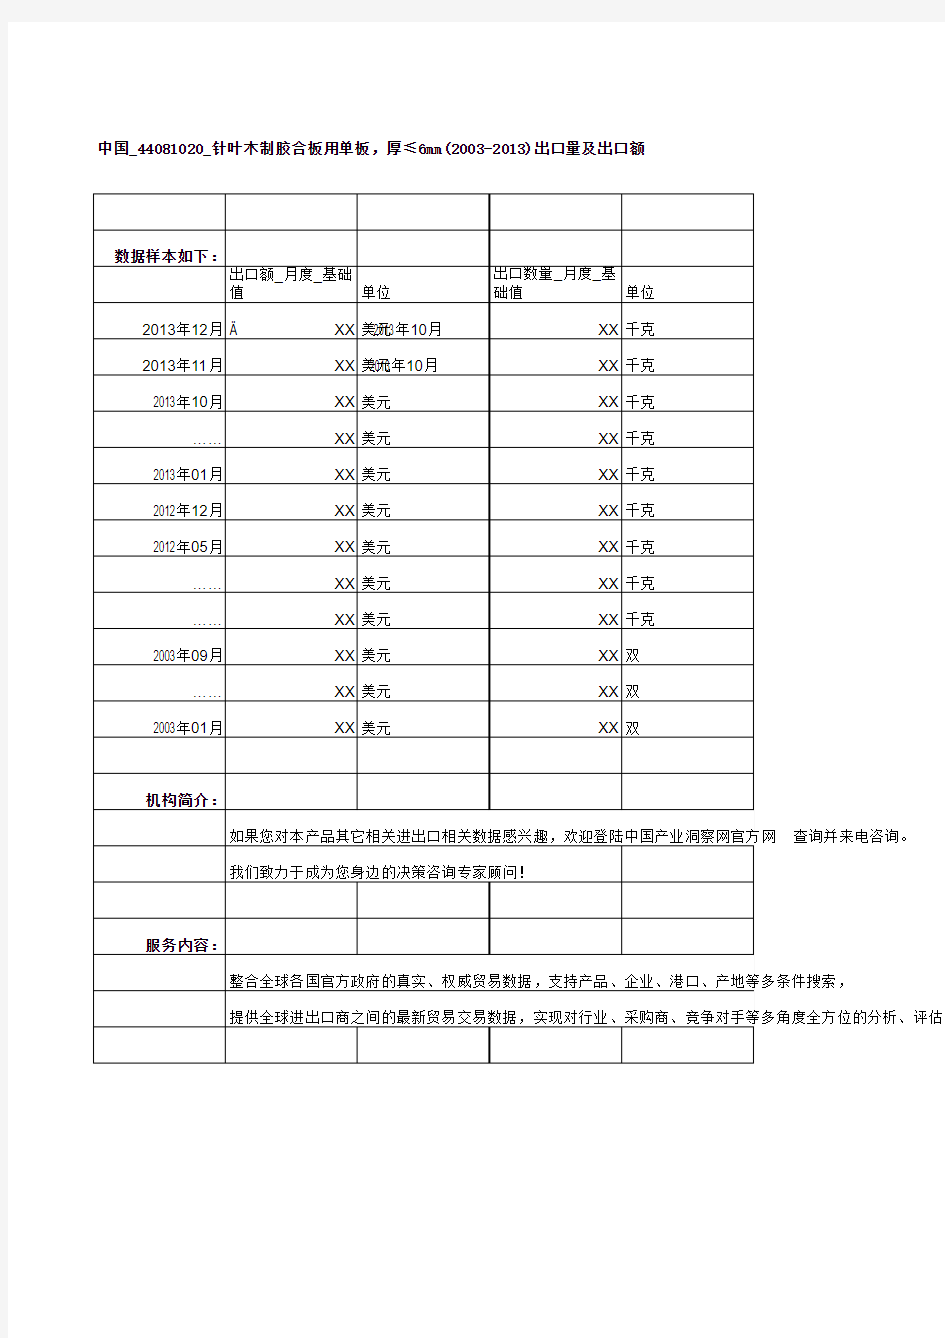 中国_44081020_针叶木制胶合板用单板,厚≤6mm(2003-2013)出口量及出口额